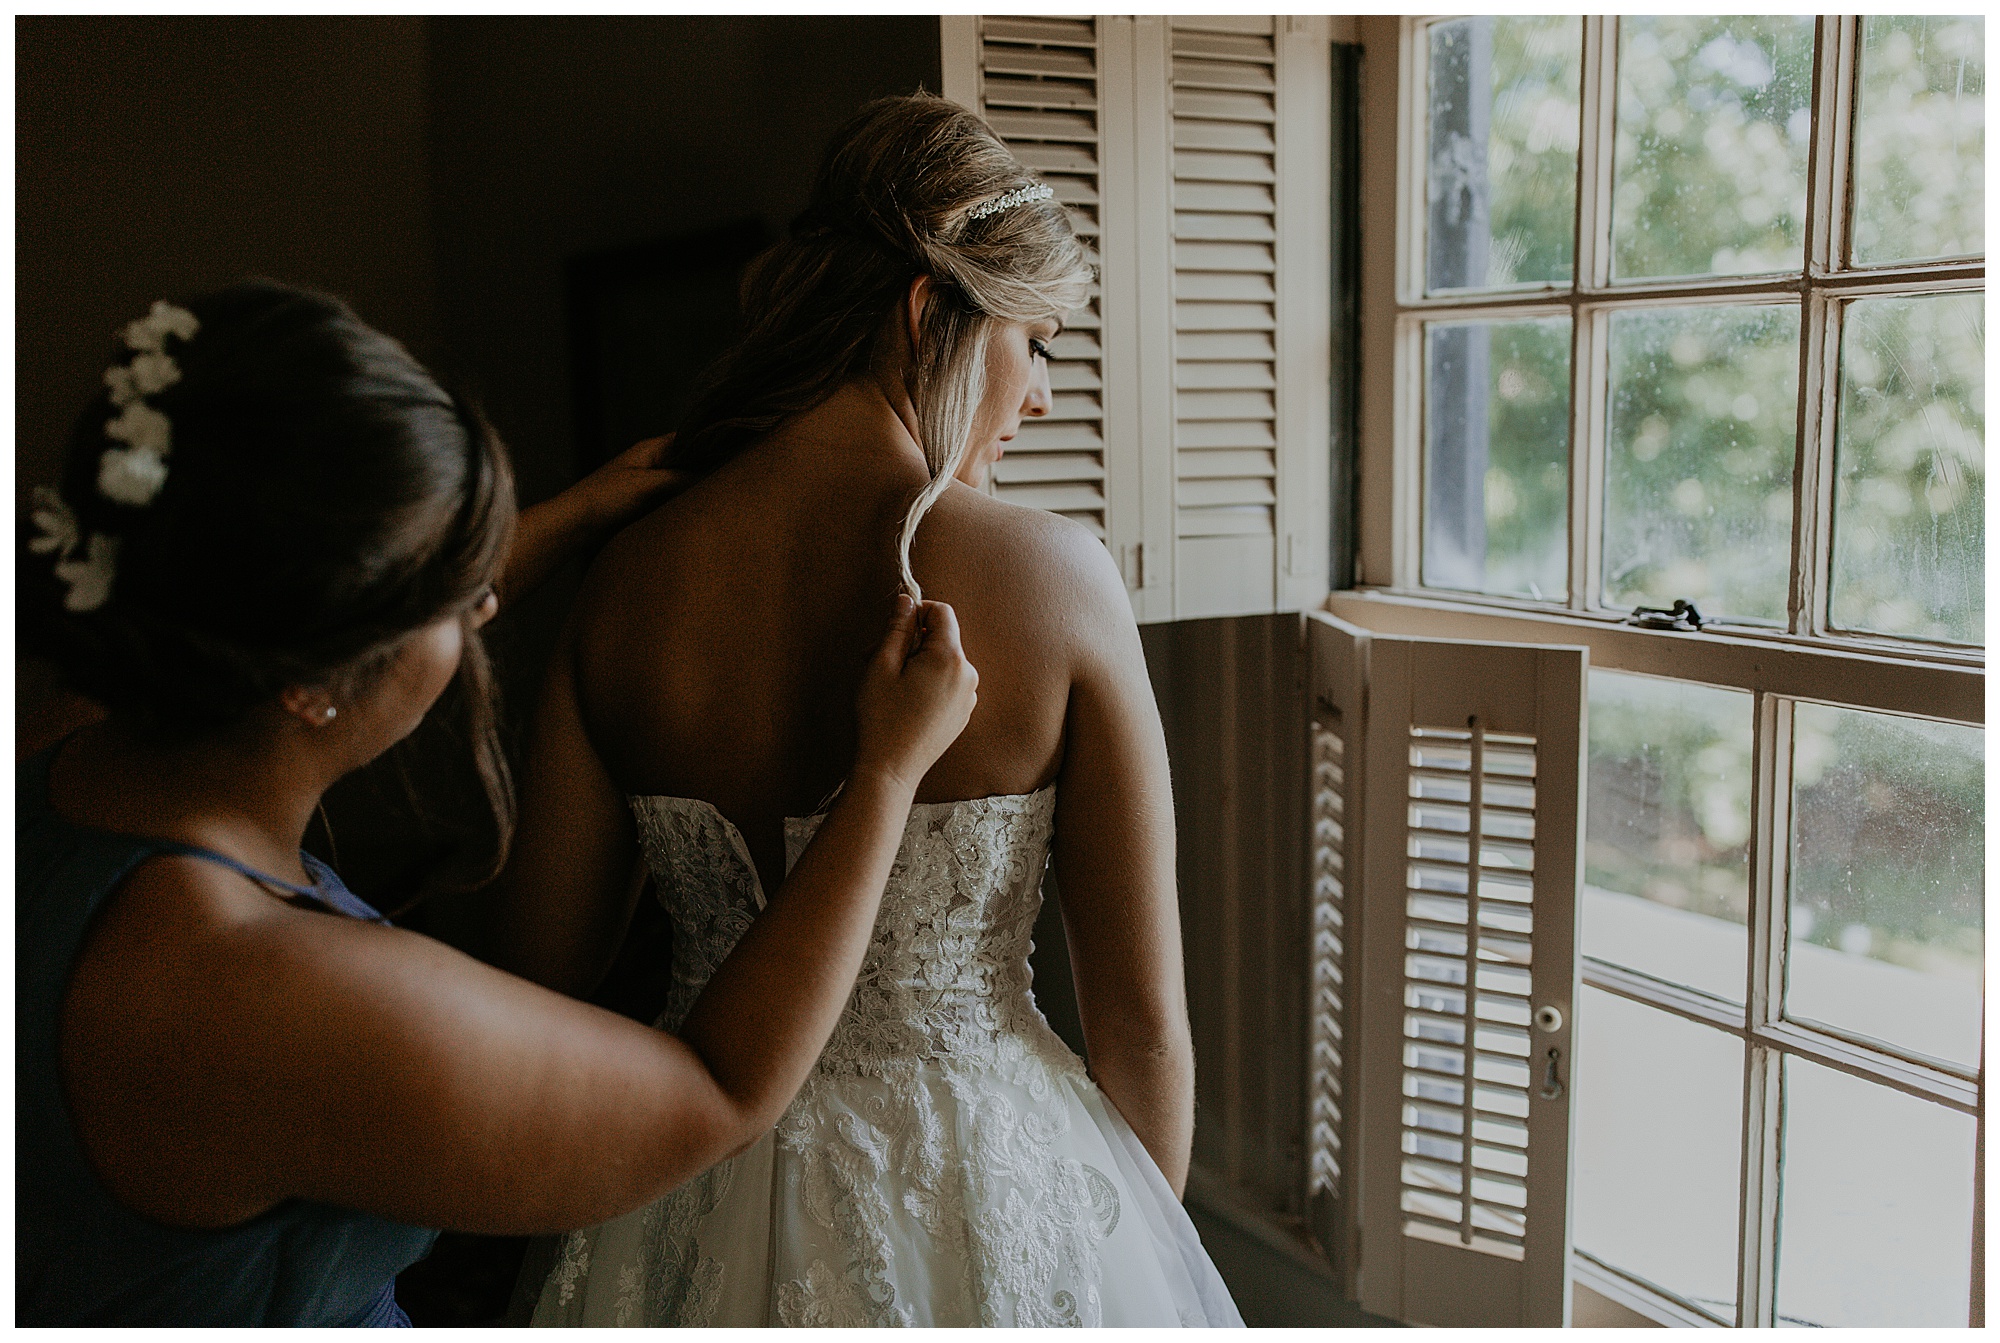 Lauren's sister helps Lauren zip her wedding dress up at the Cool Springs House.